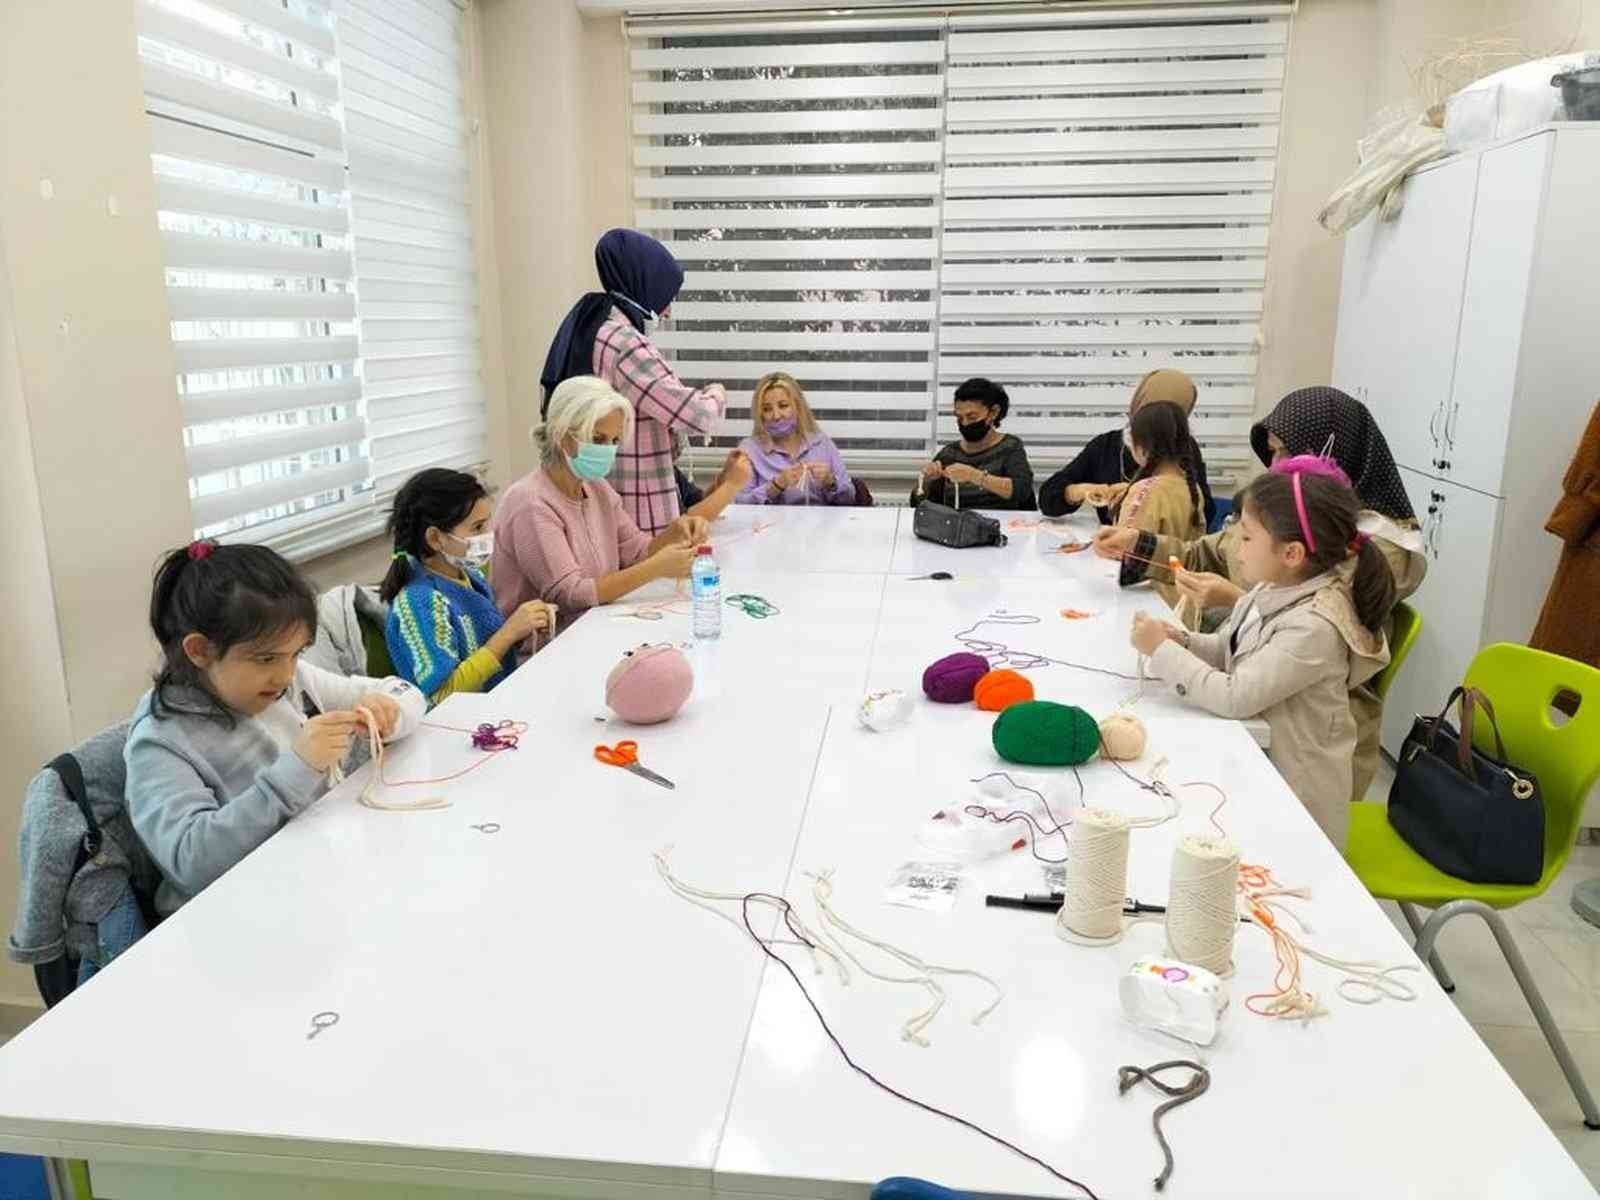 Eyüpsultan’da Aile Akademisi’nde 3 bin 500 kişi eğitim aldı #istanbul